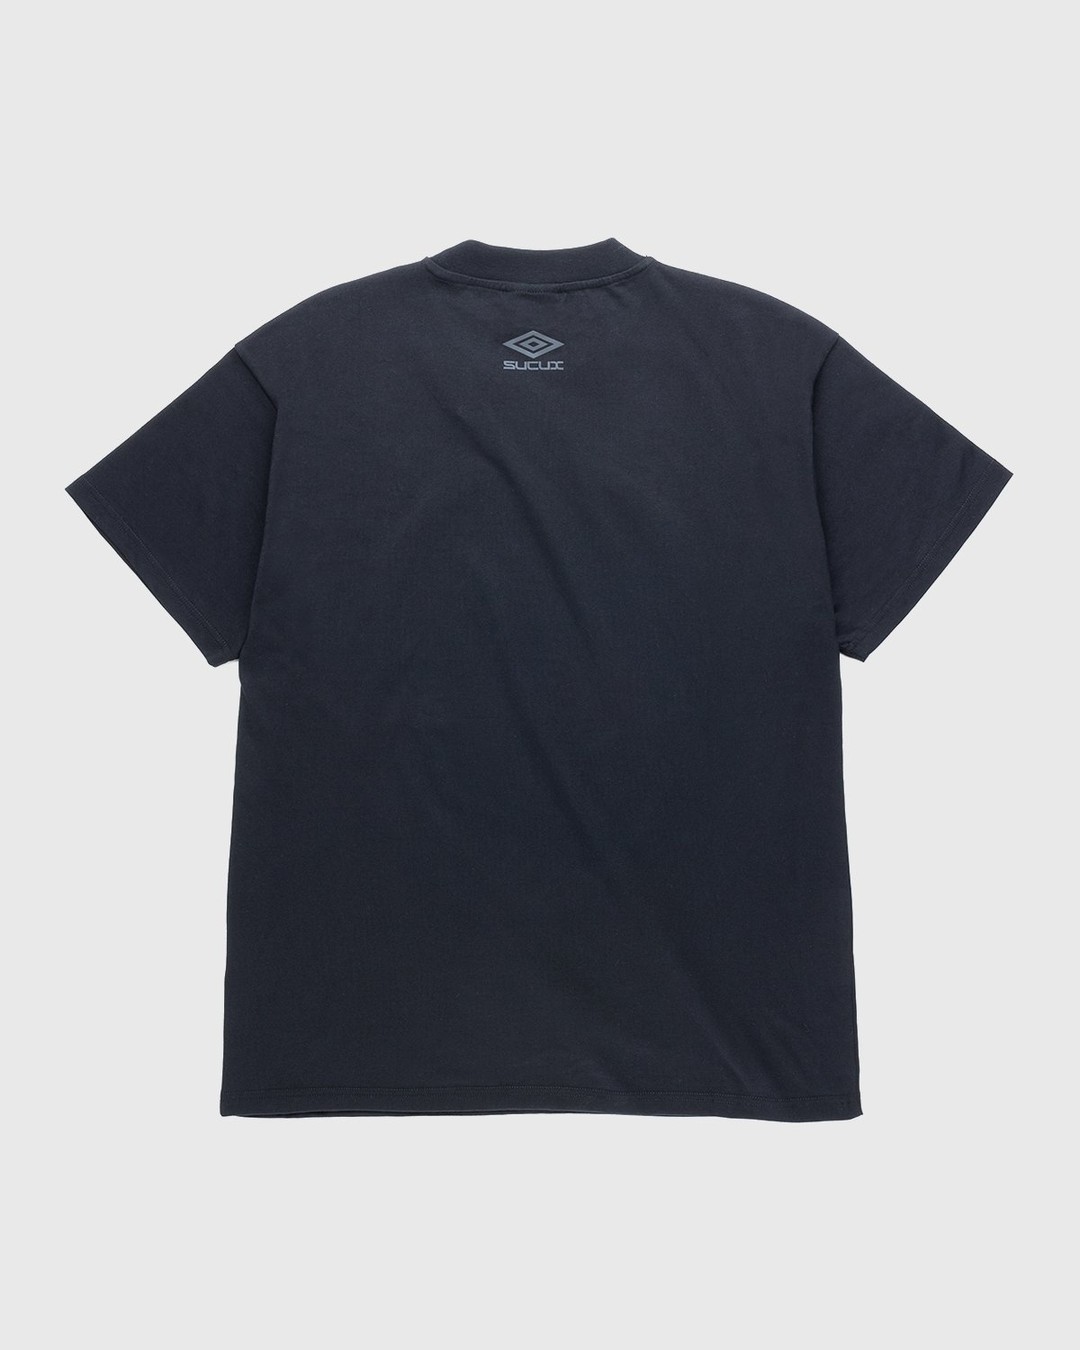 Umbro x Sucux – Oversize T-Shirt Black - T-Shirts - Black - Image 2